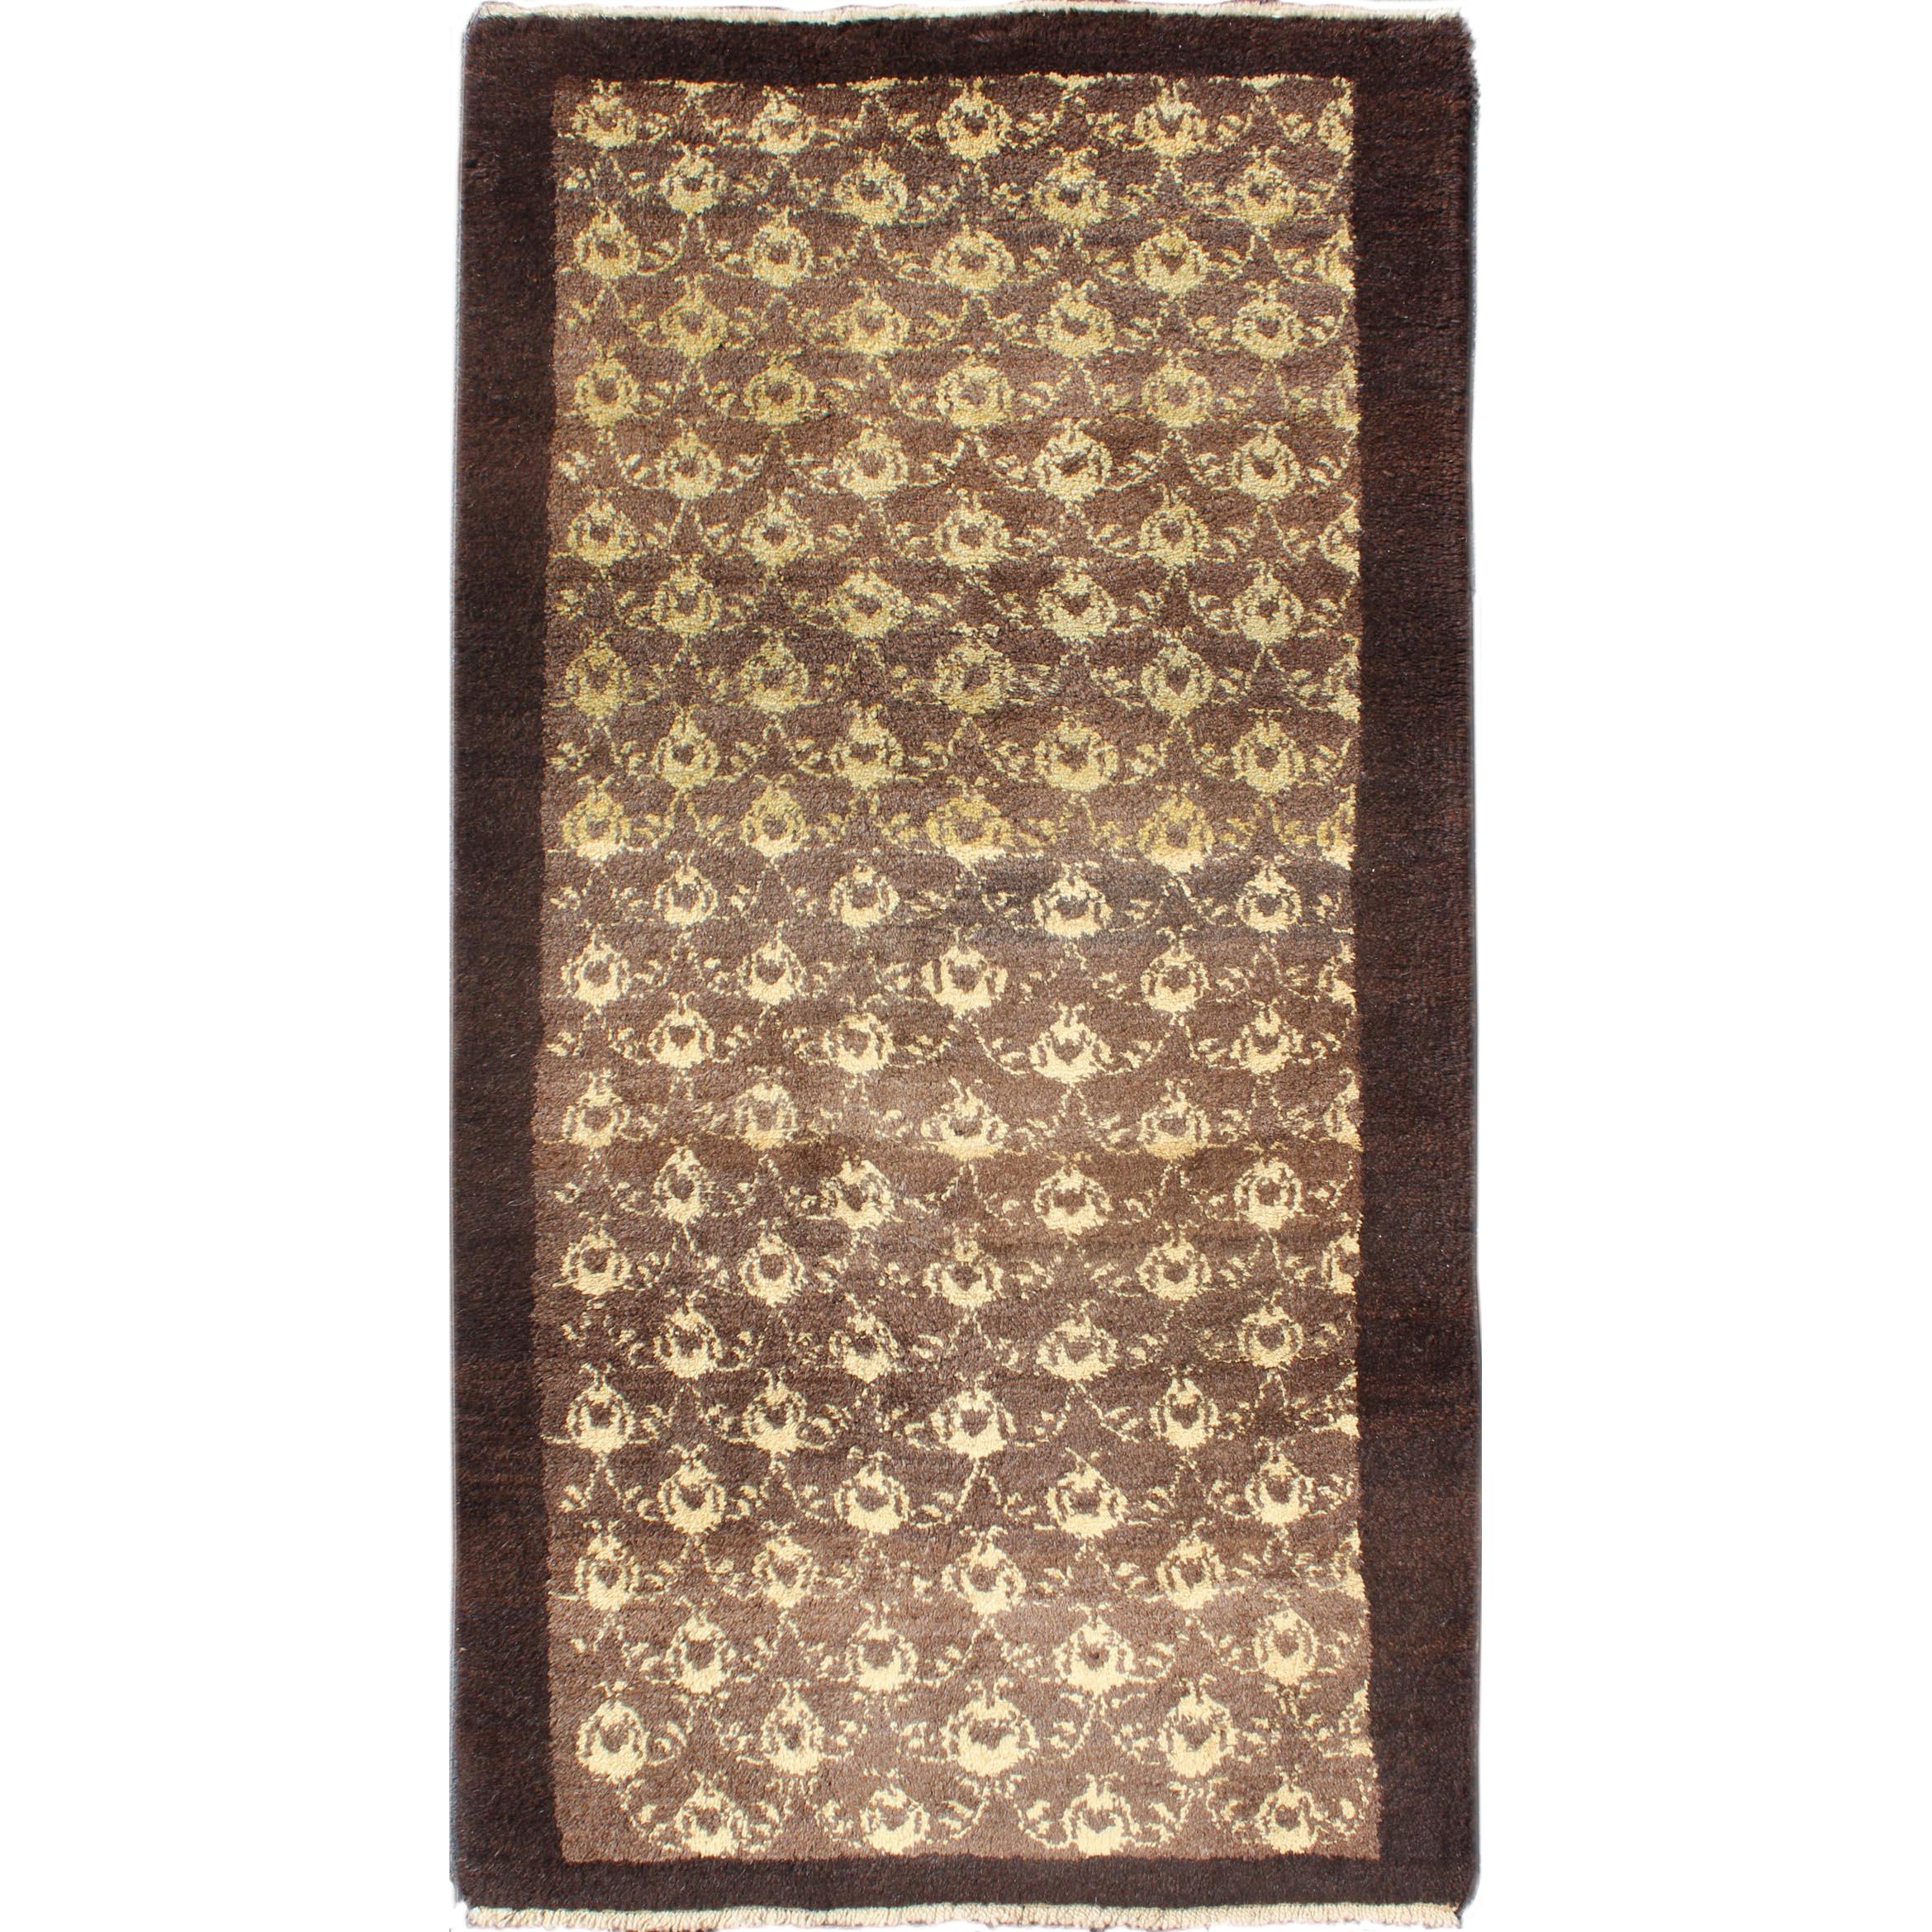 Türkischer Tulu-Teppich in braunem All-Over-Design, Vintage